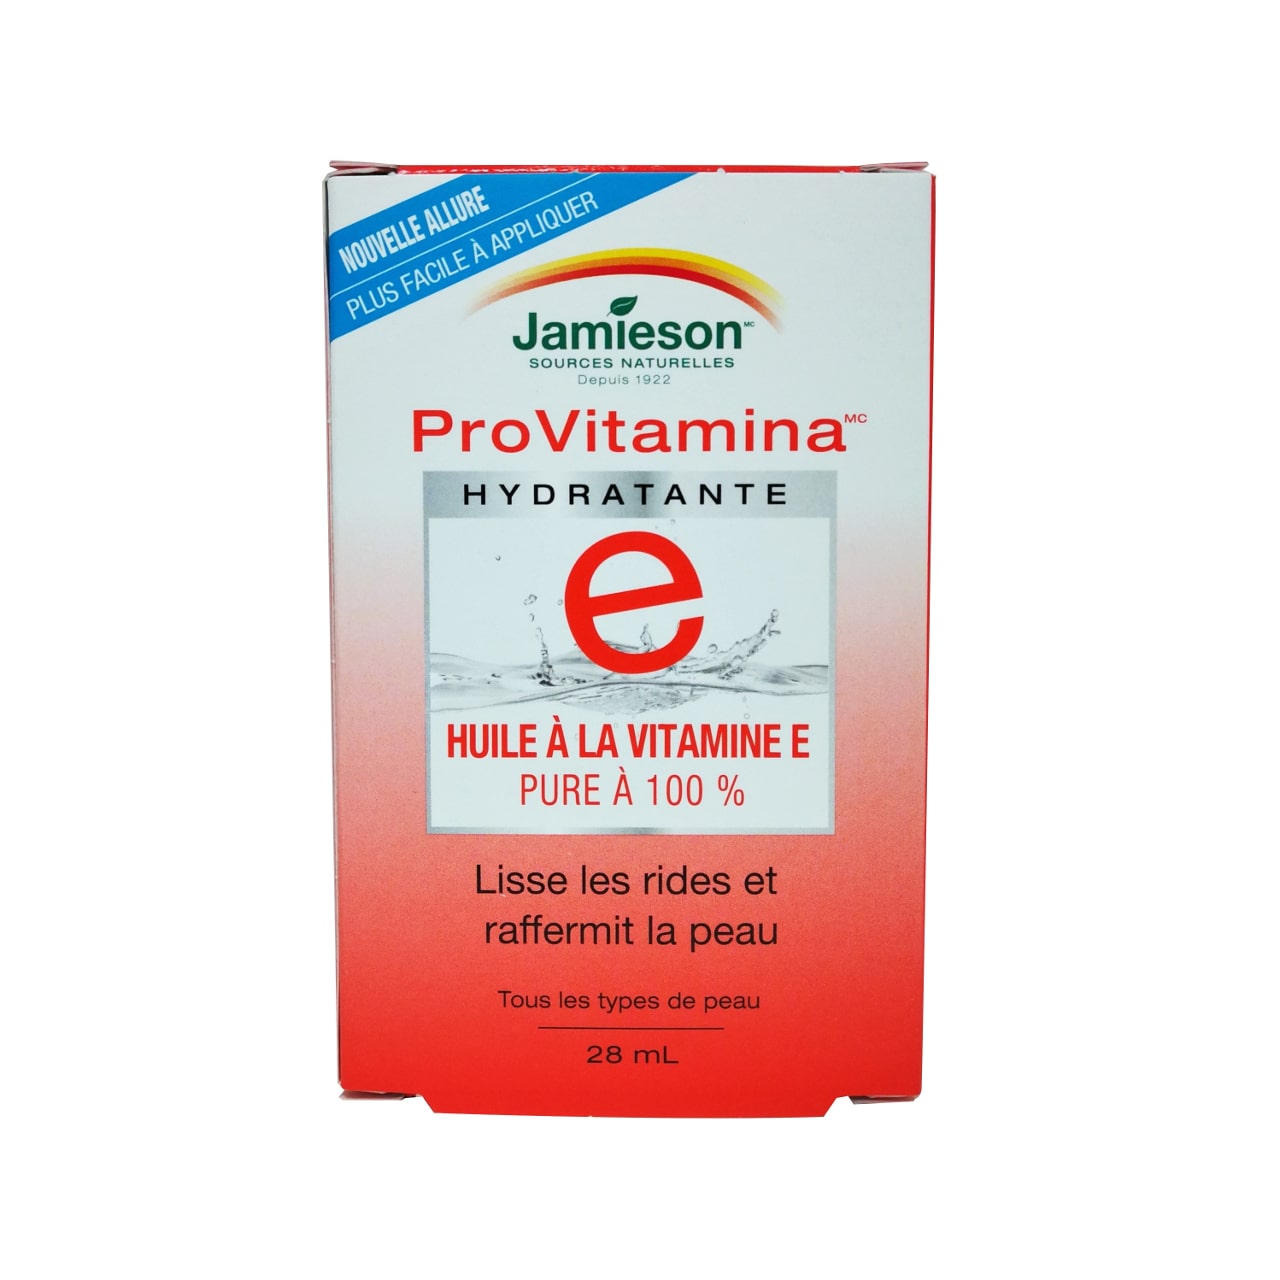 Product label for Jamieson ProVitamina Vitamin E Oil 100% Pure in French